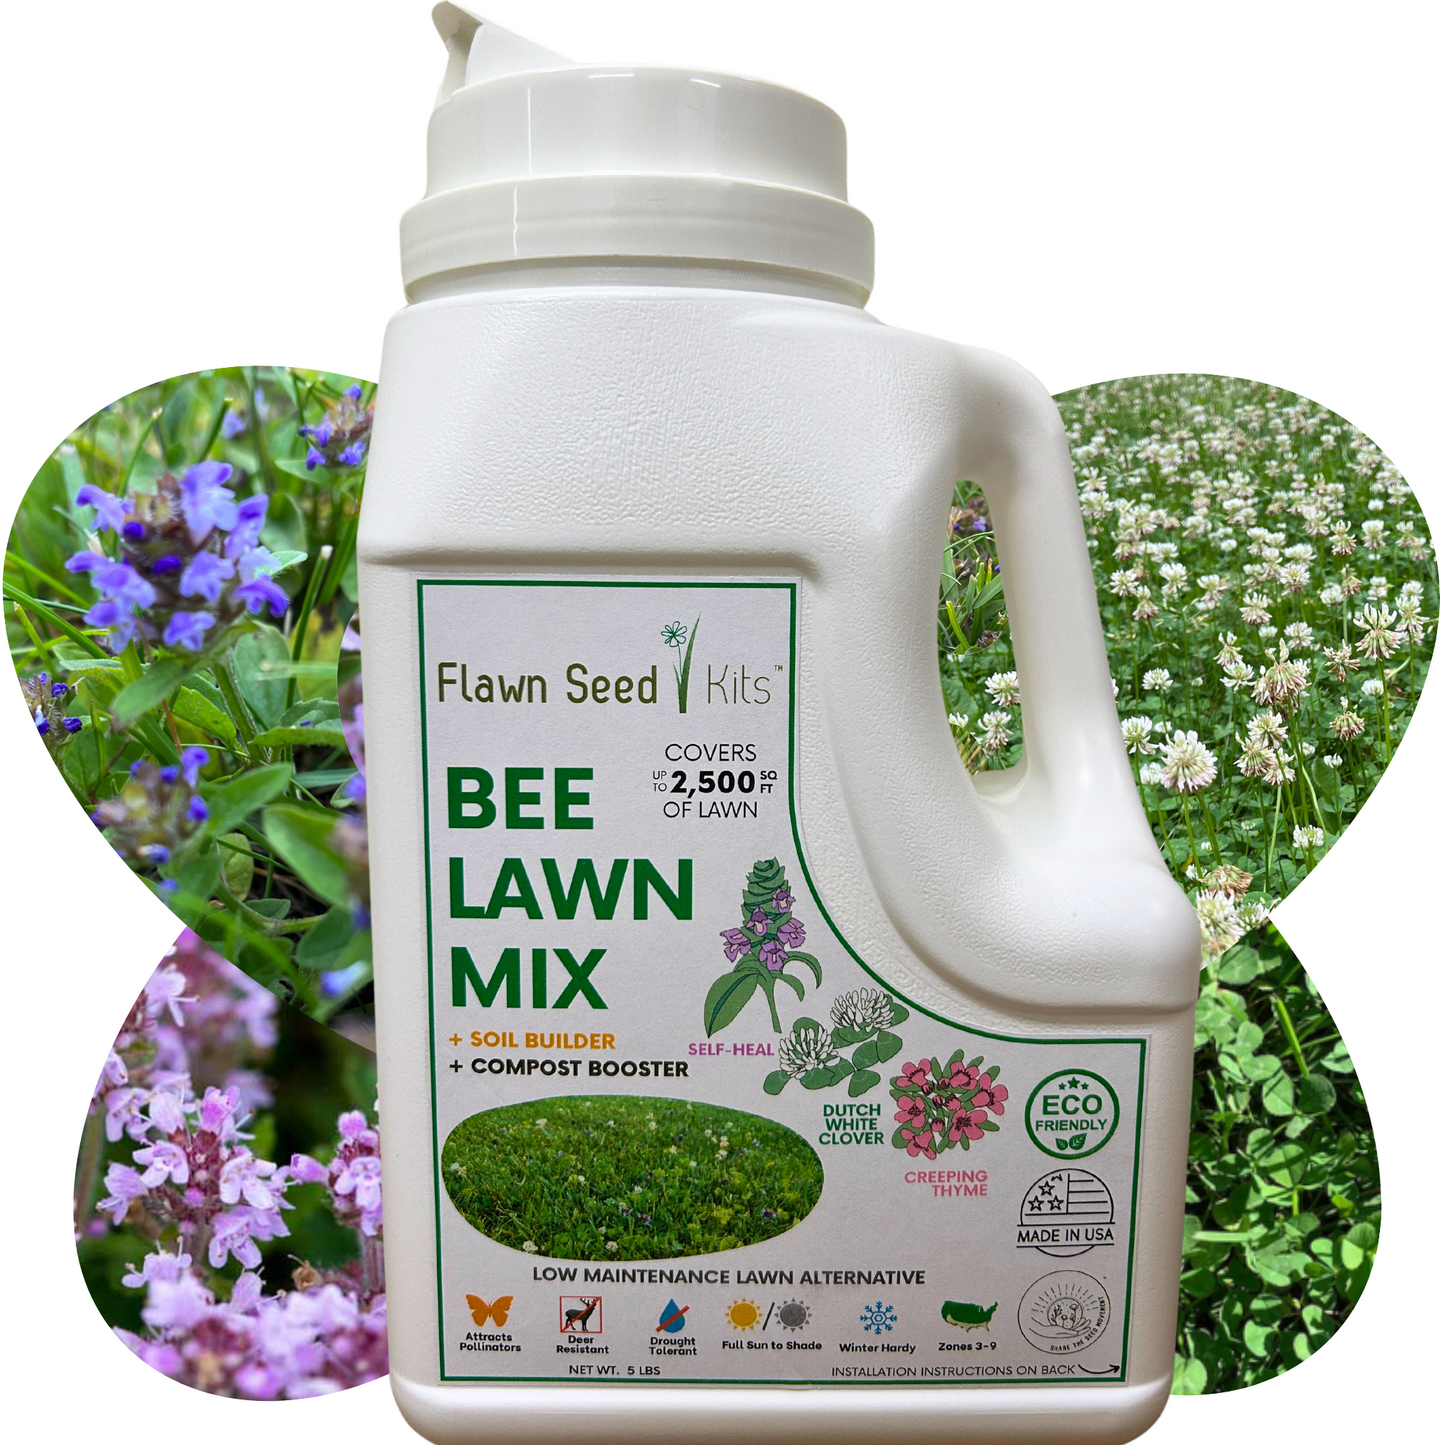 Flowering Bee Lawn Seed Mixture - Easy Spread Shaker